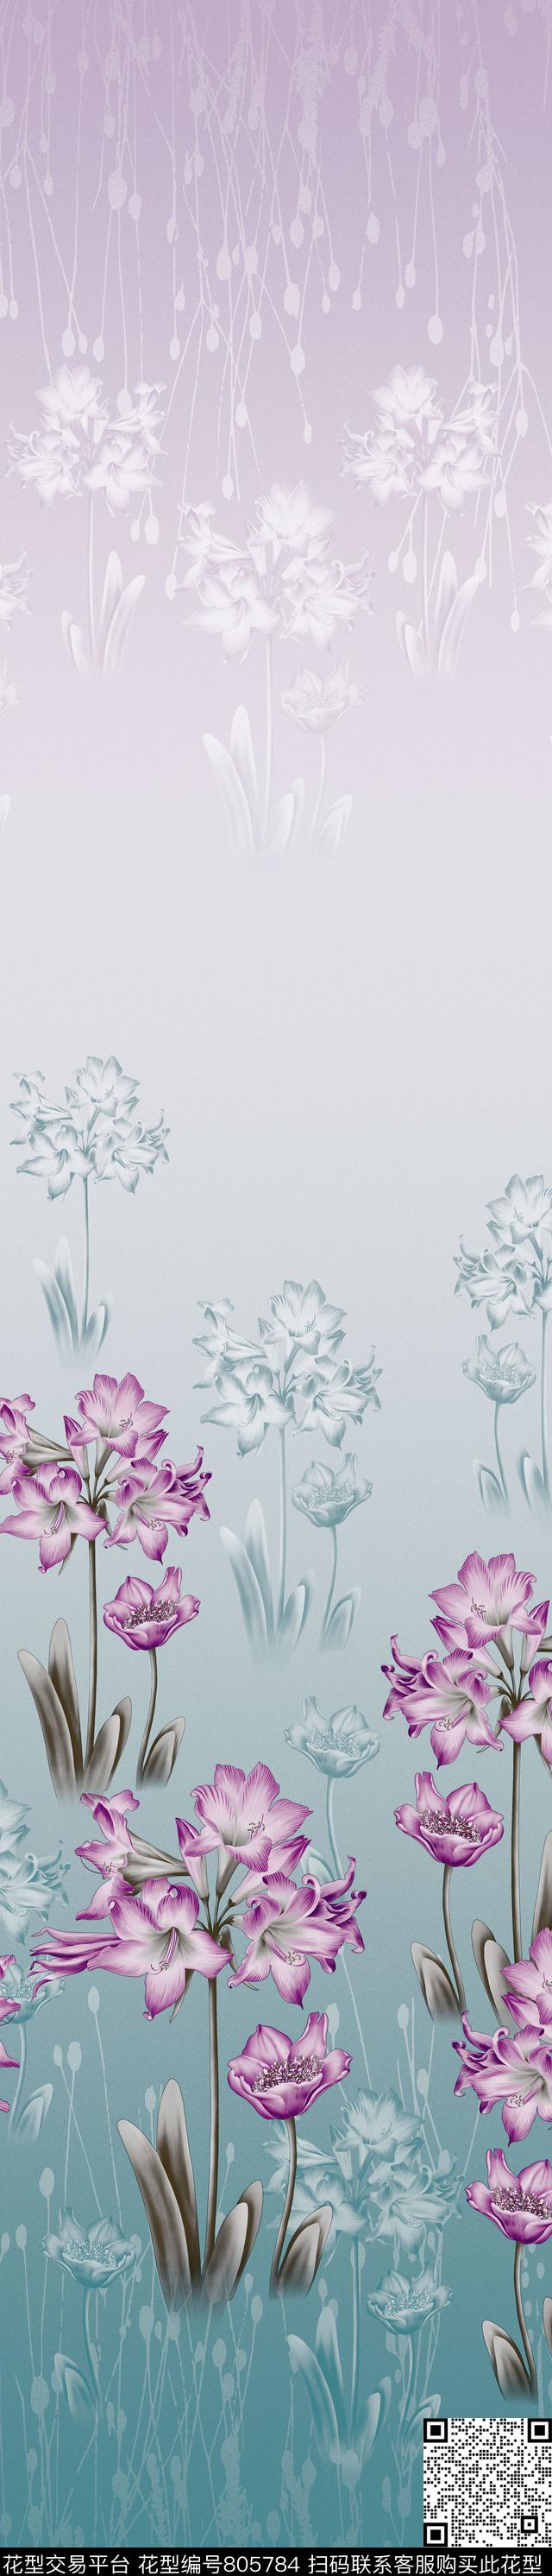 YJH170316a.jpg - 805784 - 花朵 花卉 彩条 - 传统印花花型 － 窗帘花型设计 － 瓦栏